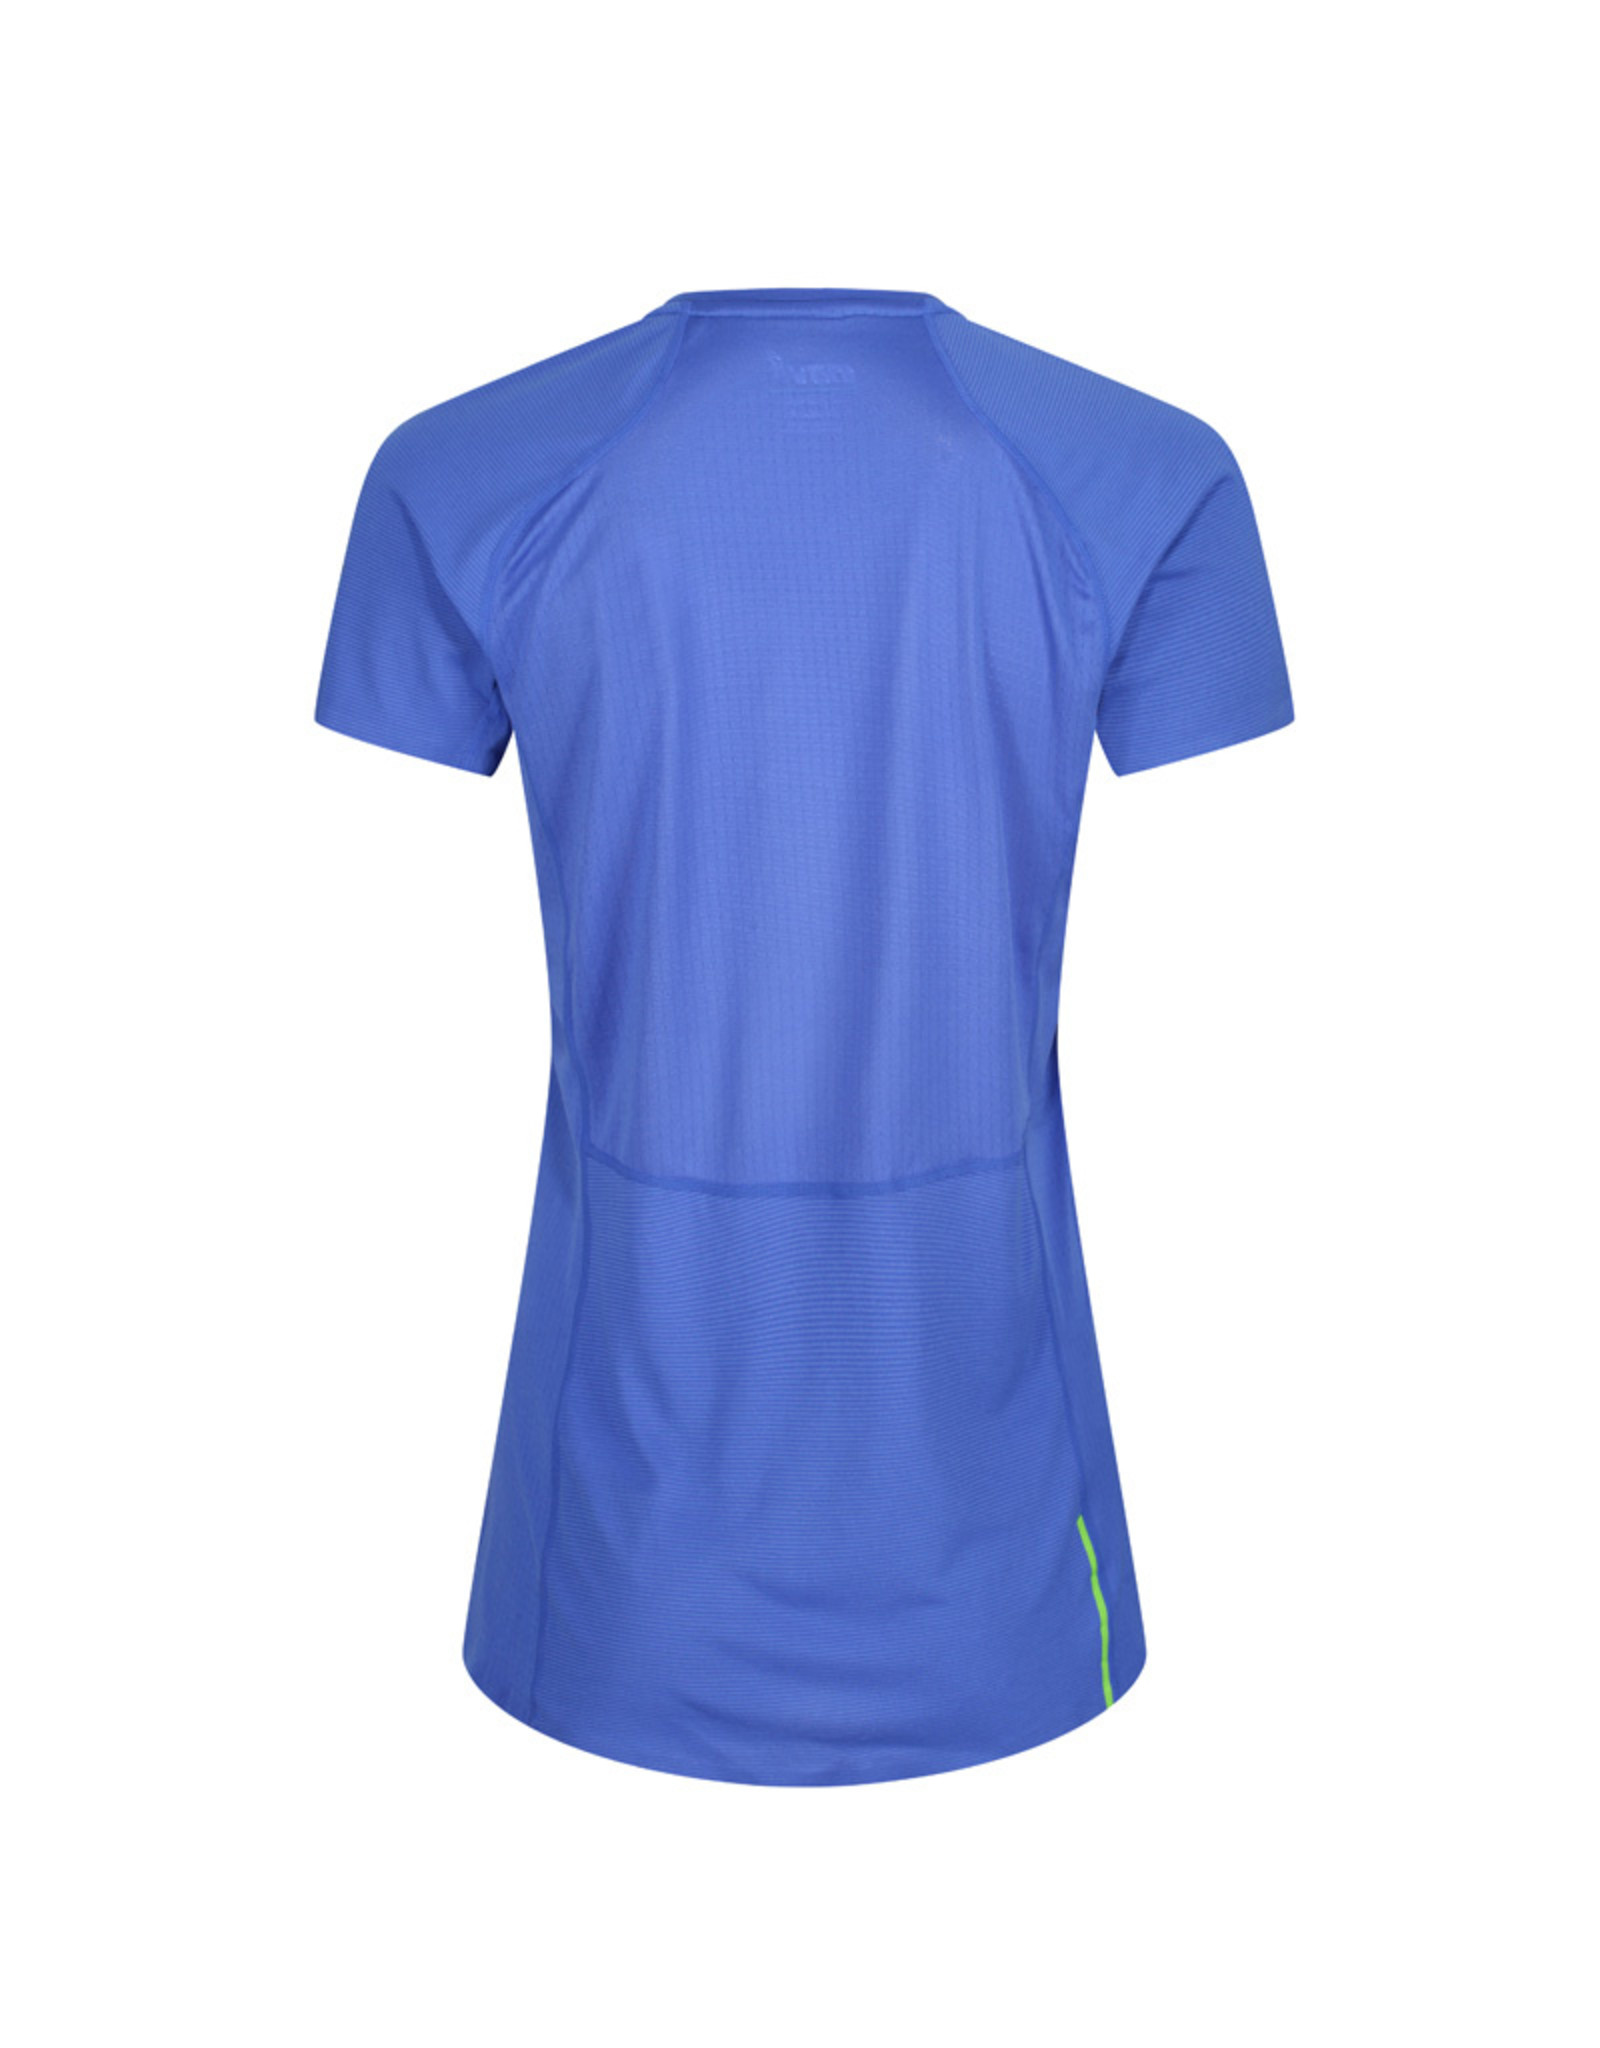 Inov-8 Base Elite Shirt Manche Courte - Bleu